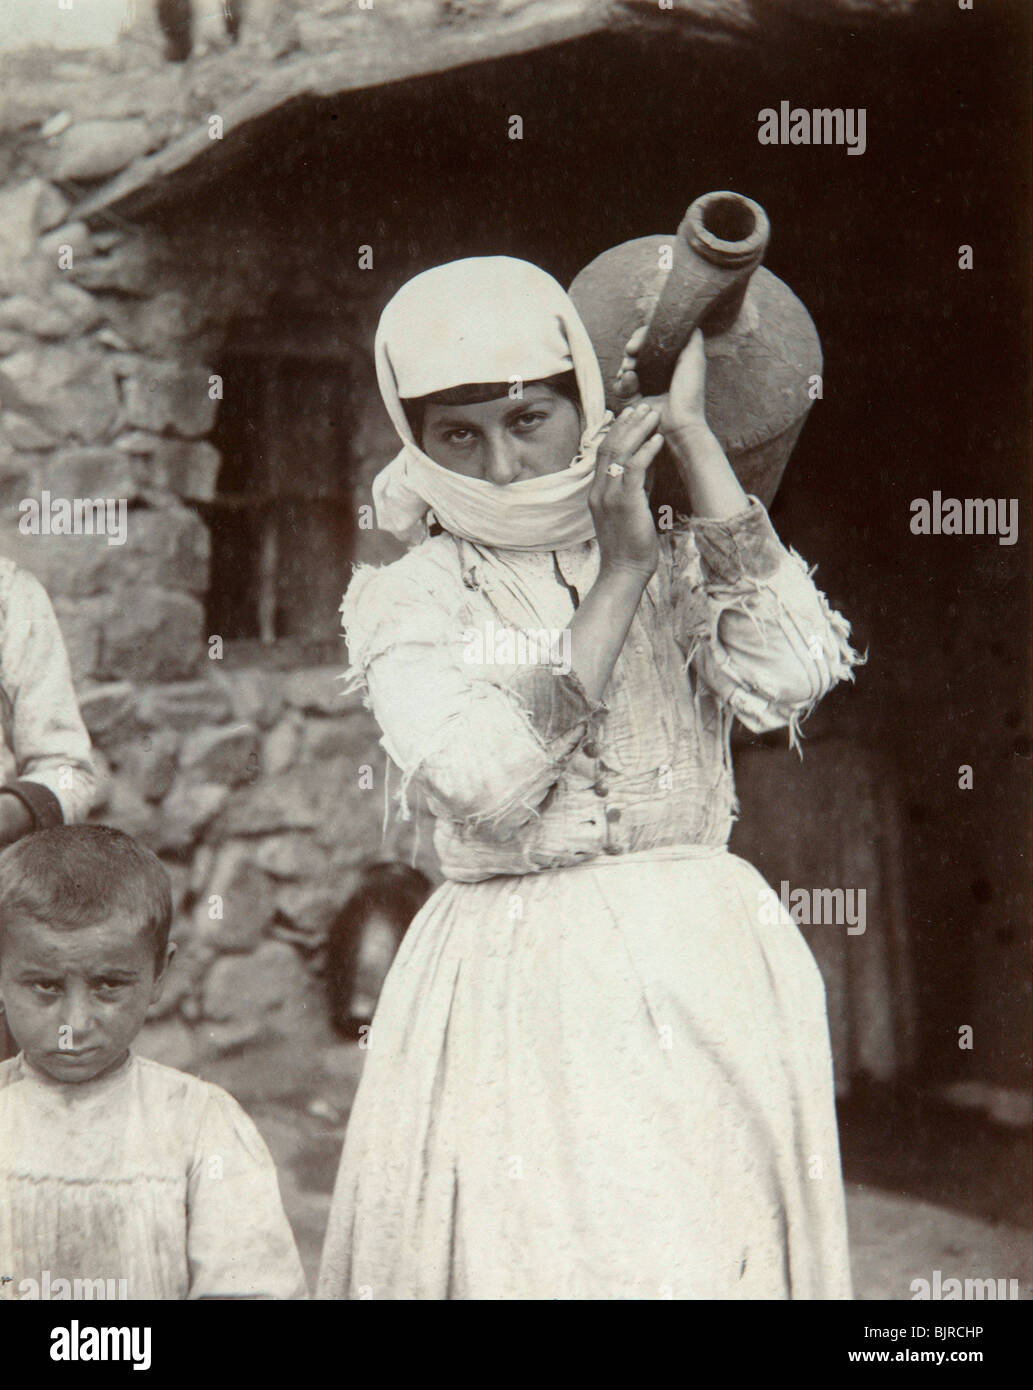 Fille de la campagne d'Arménie, Erevan, Arménie, 1880. Artiste : Dmitri Ivanovich Yermakov Banque D'Images